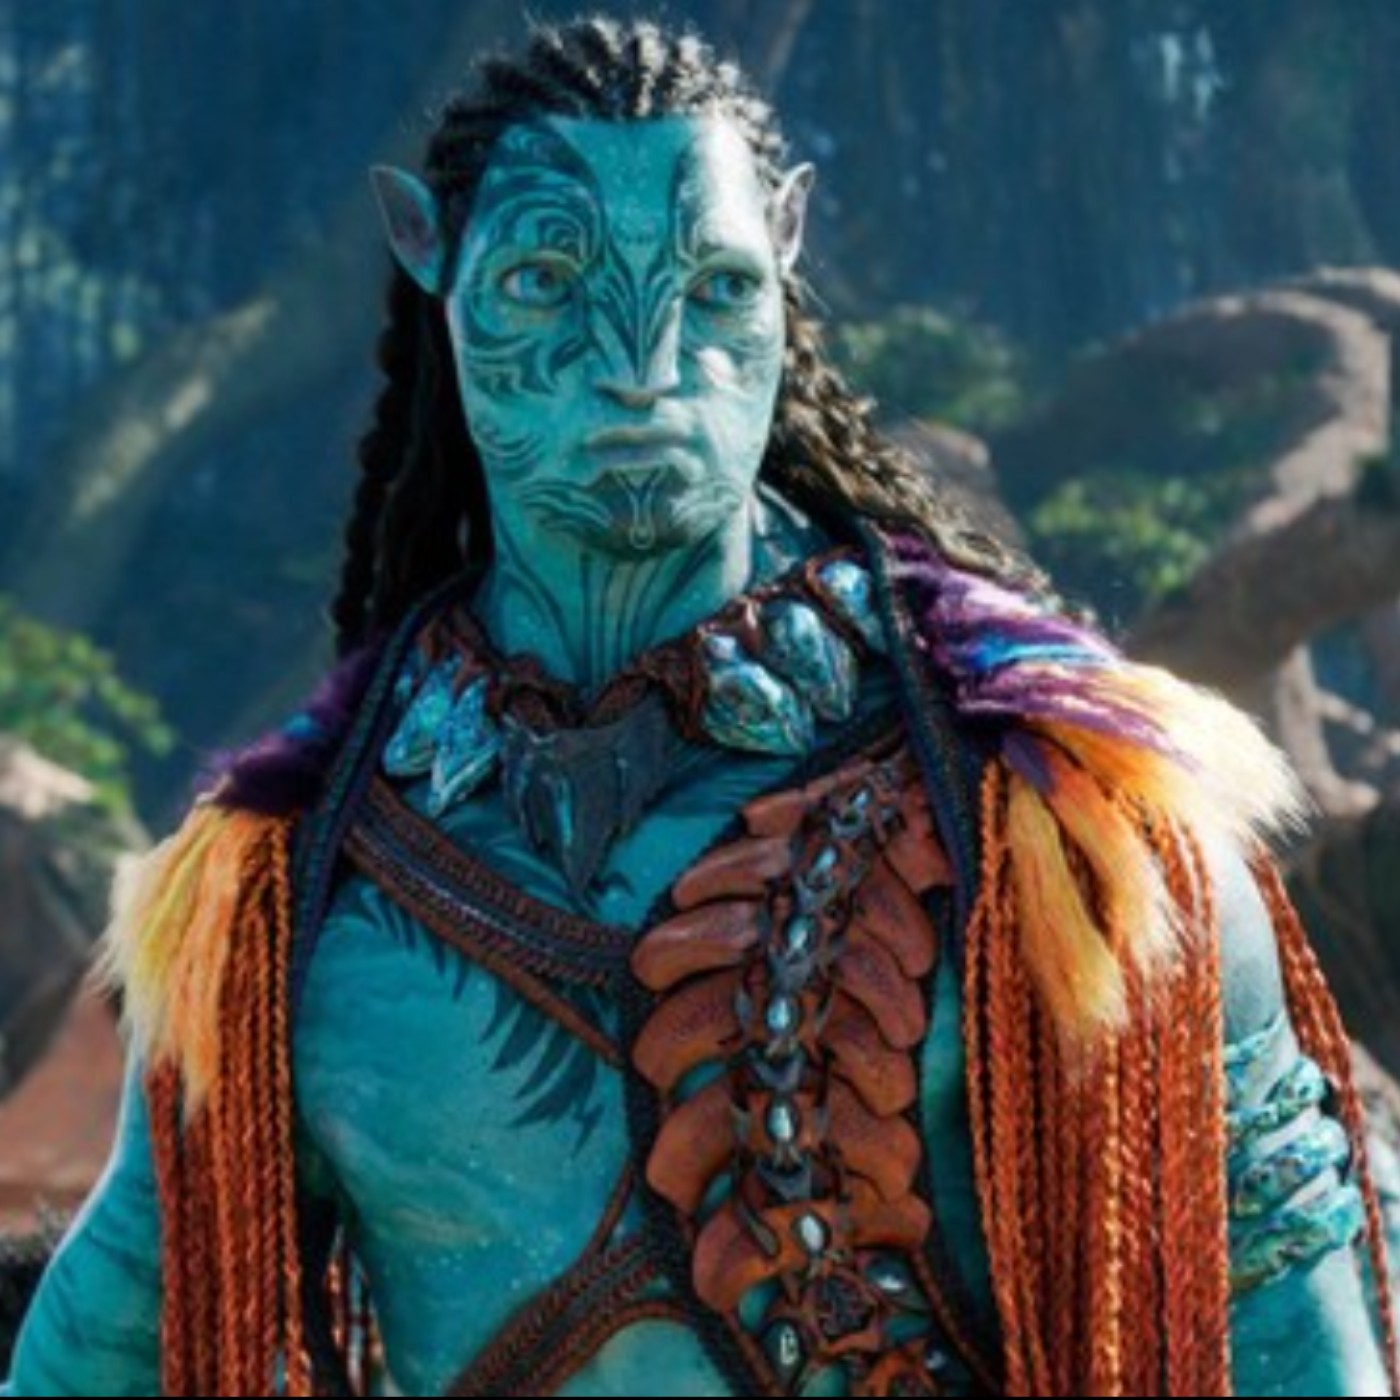 Chào mừng đến với Avatar 2 - bộ phim đầy màu sắc và hiện đại sẽ đưa bạn đi đến các hành tinh khác. Hãy cùng nhau đón xem phiên bản tiếng Tây Ban Nha và trải nghiệm những màn hành động kịch tính trong năm